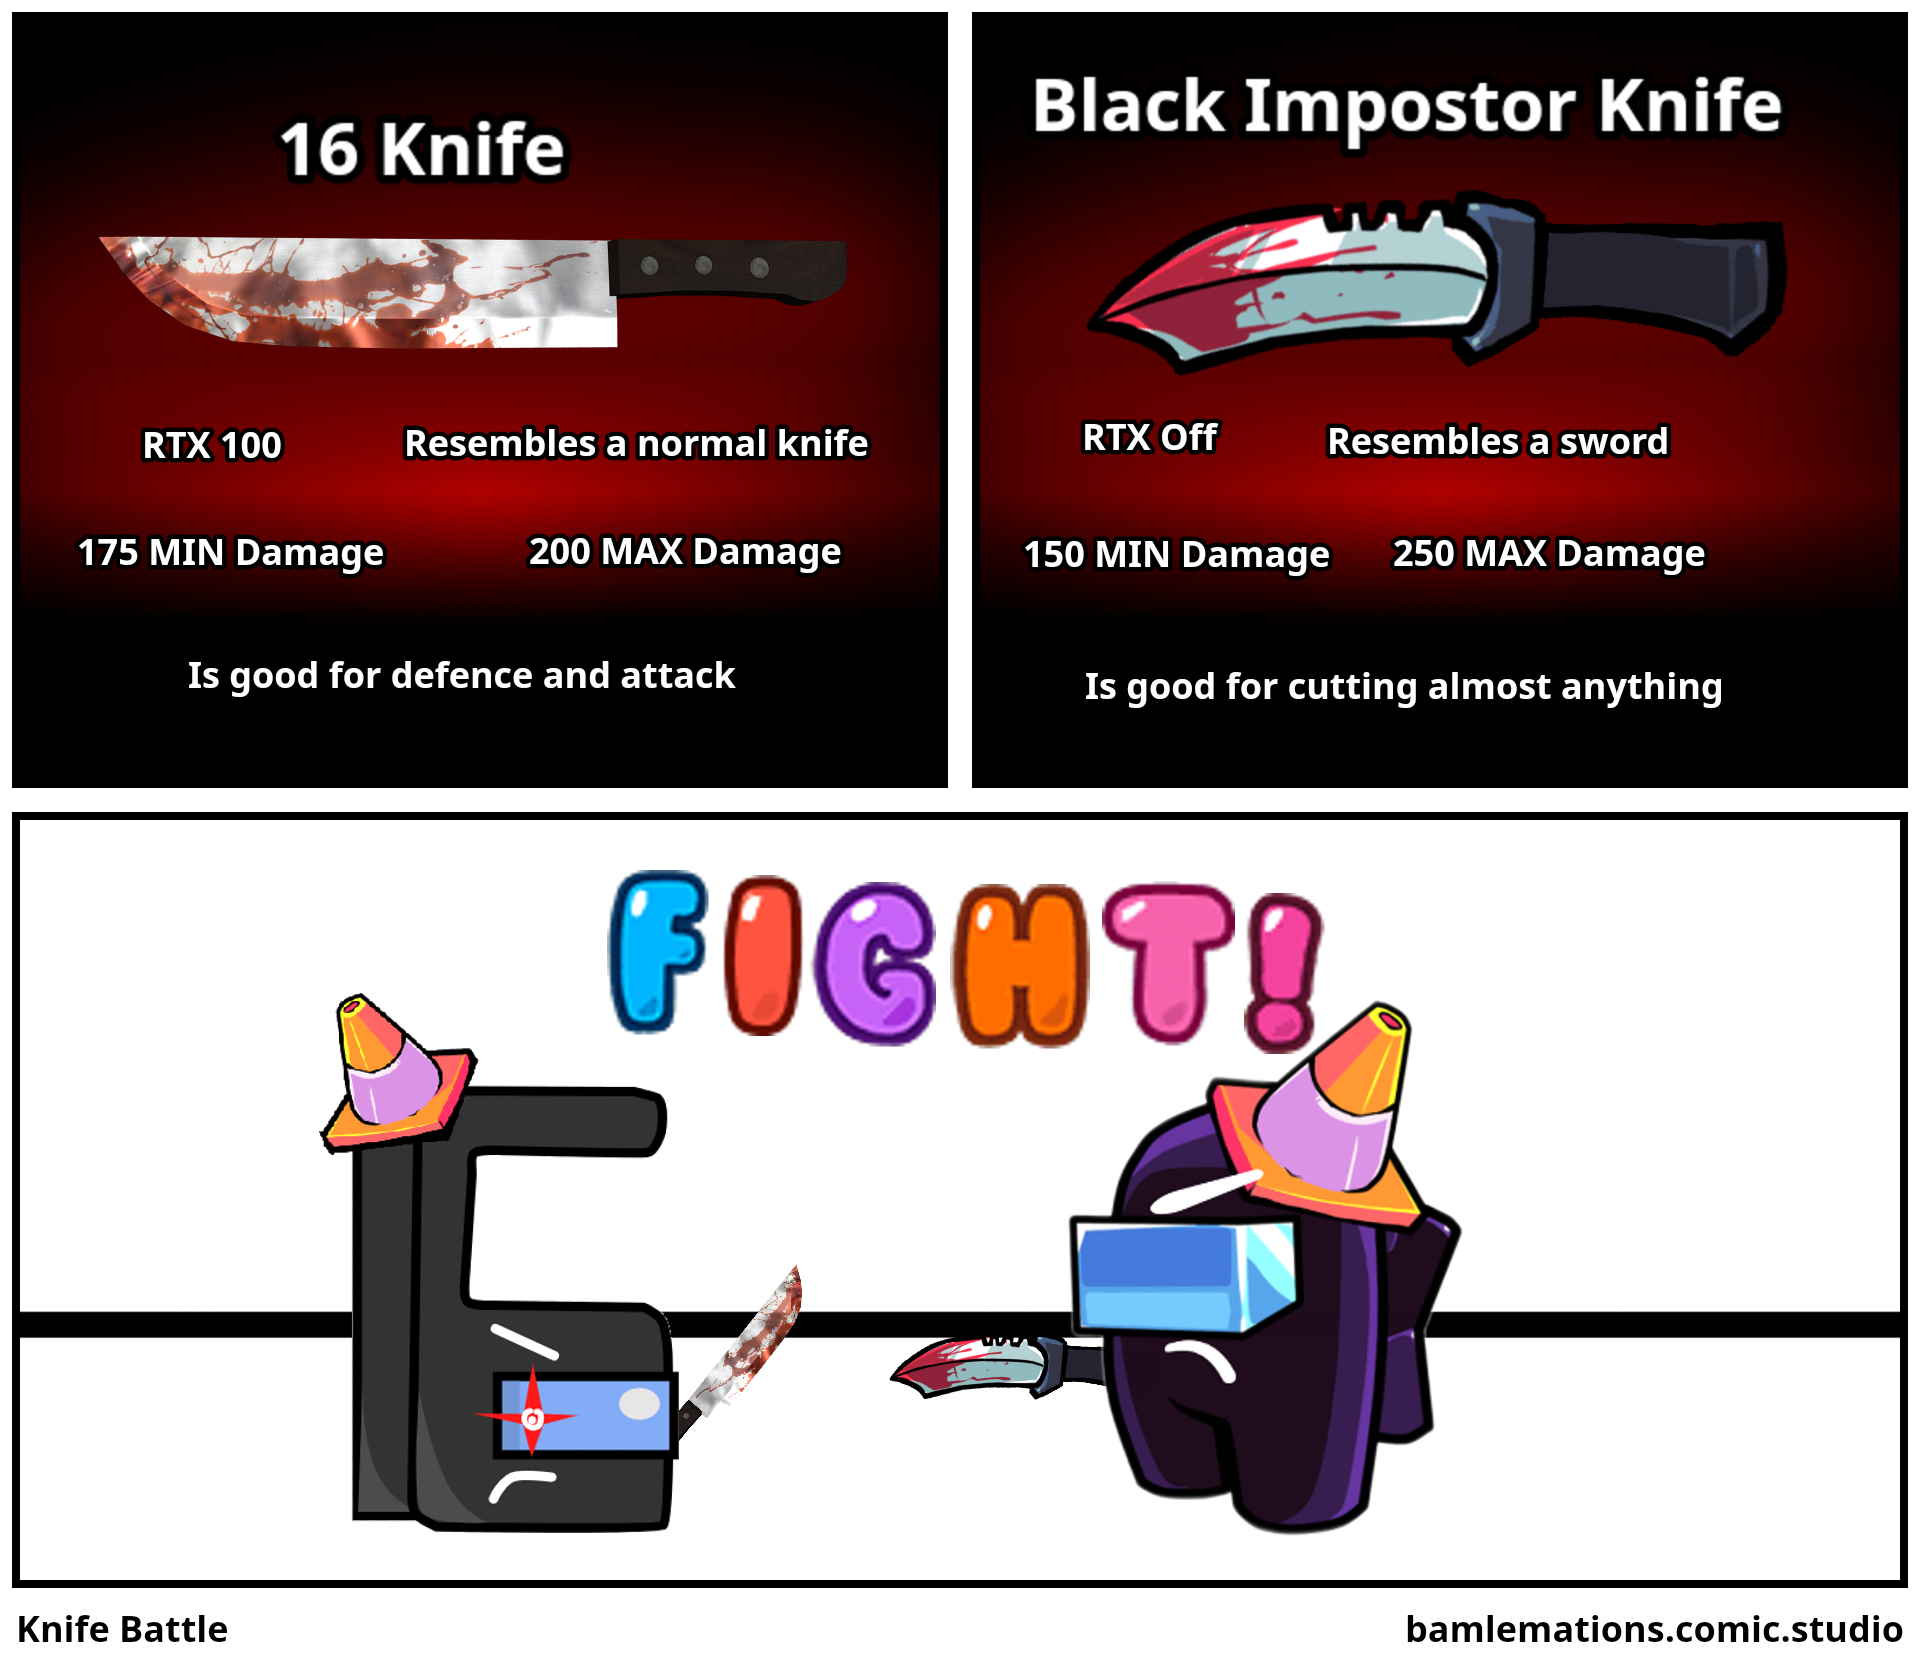 Knife Battle